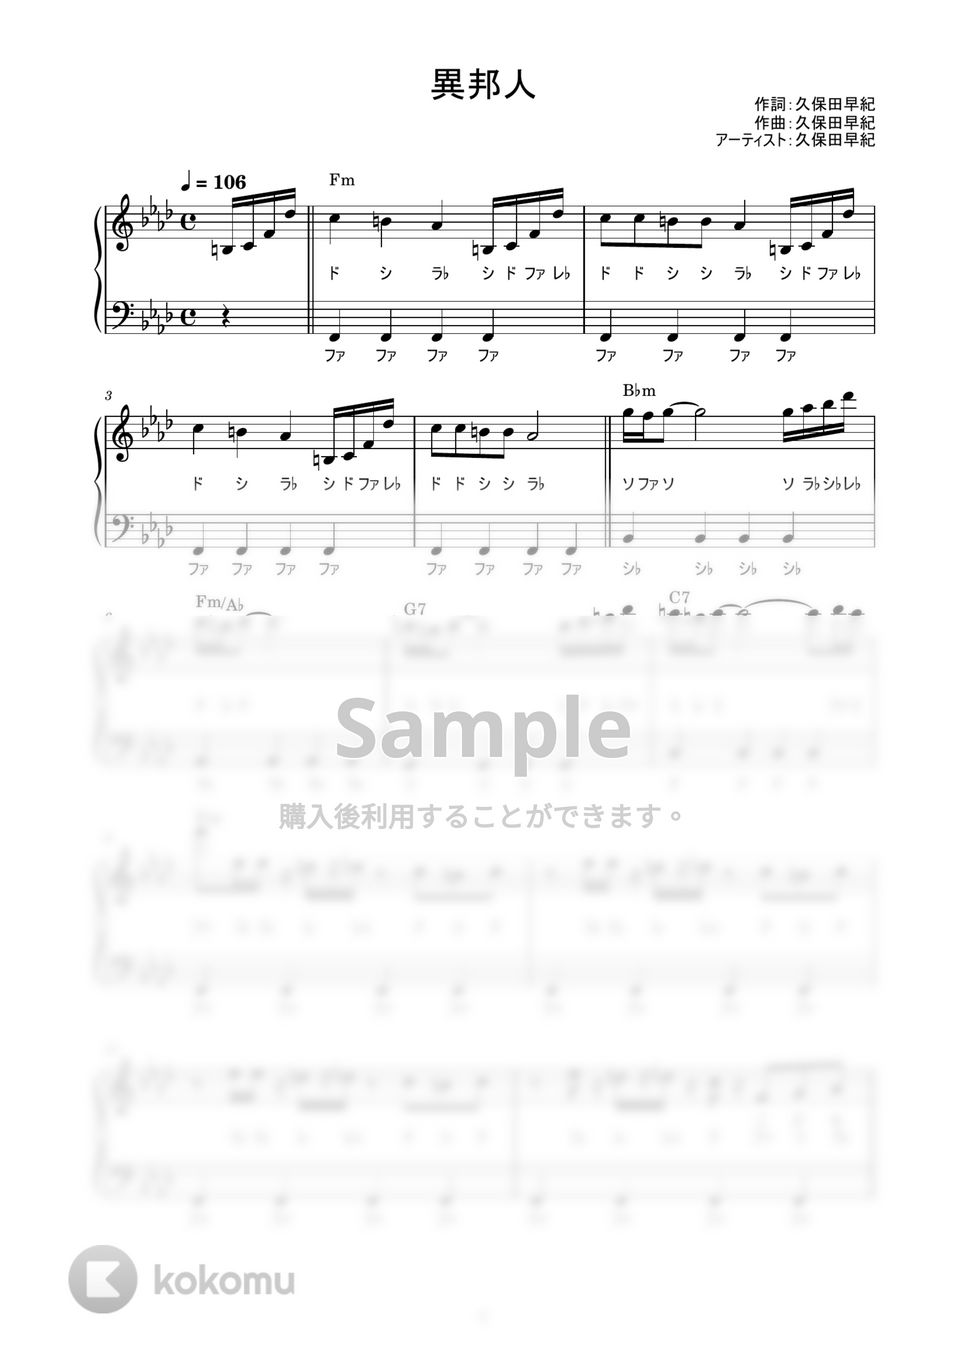 久保田早紀 - 異邦人 (かんたん / 歌詞付き / ドレミ付き / 初心者) by piano.tokyo